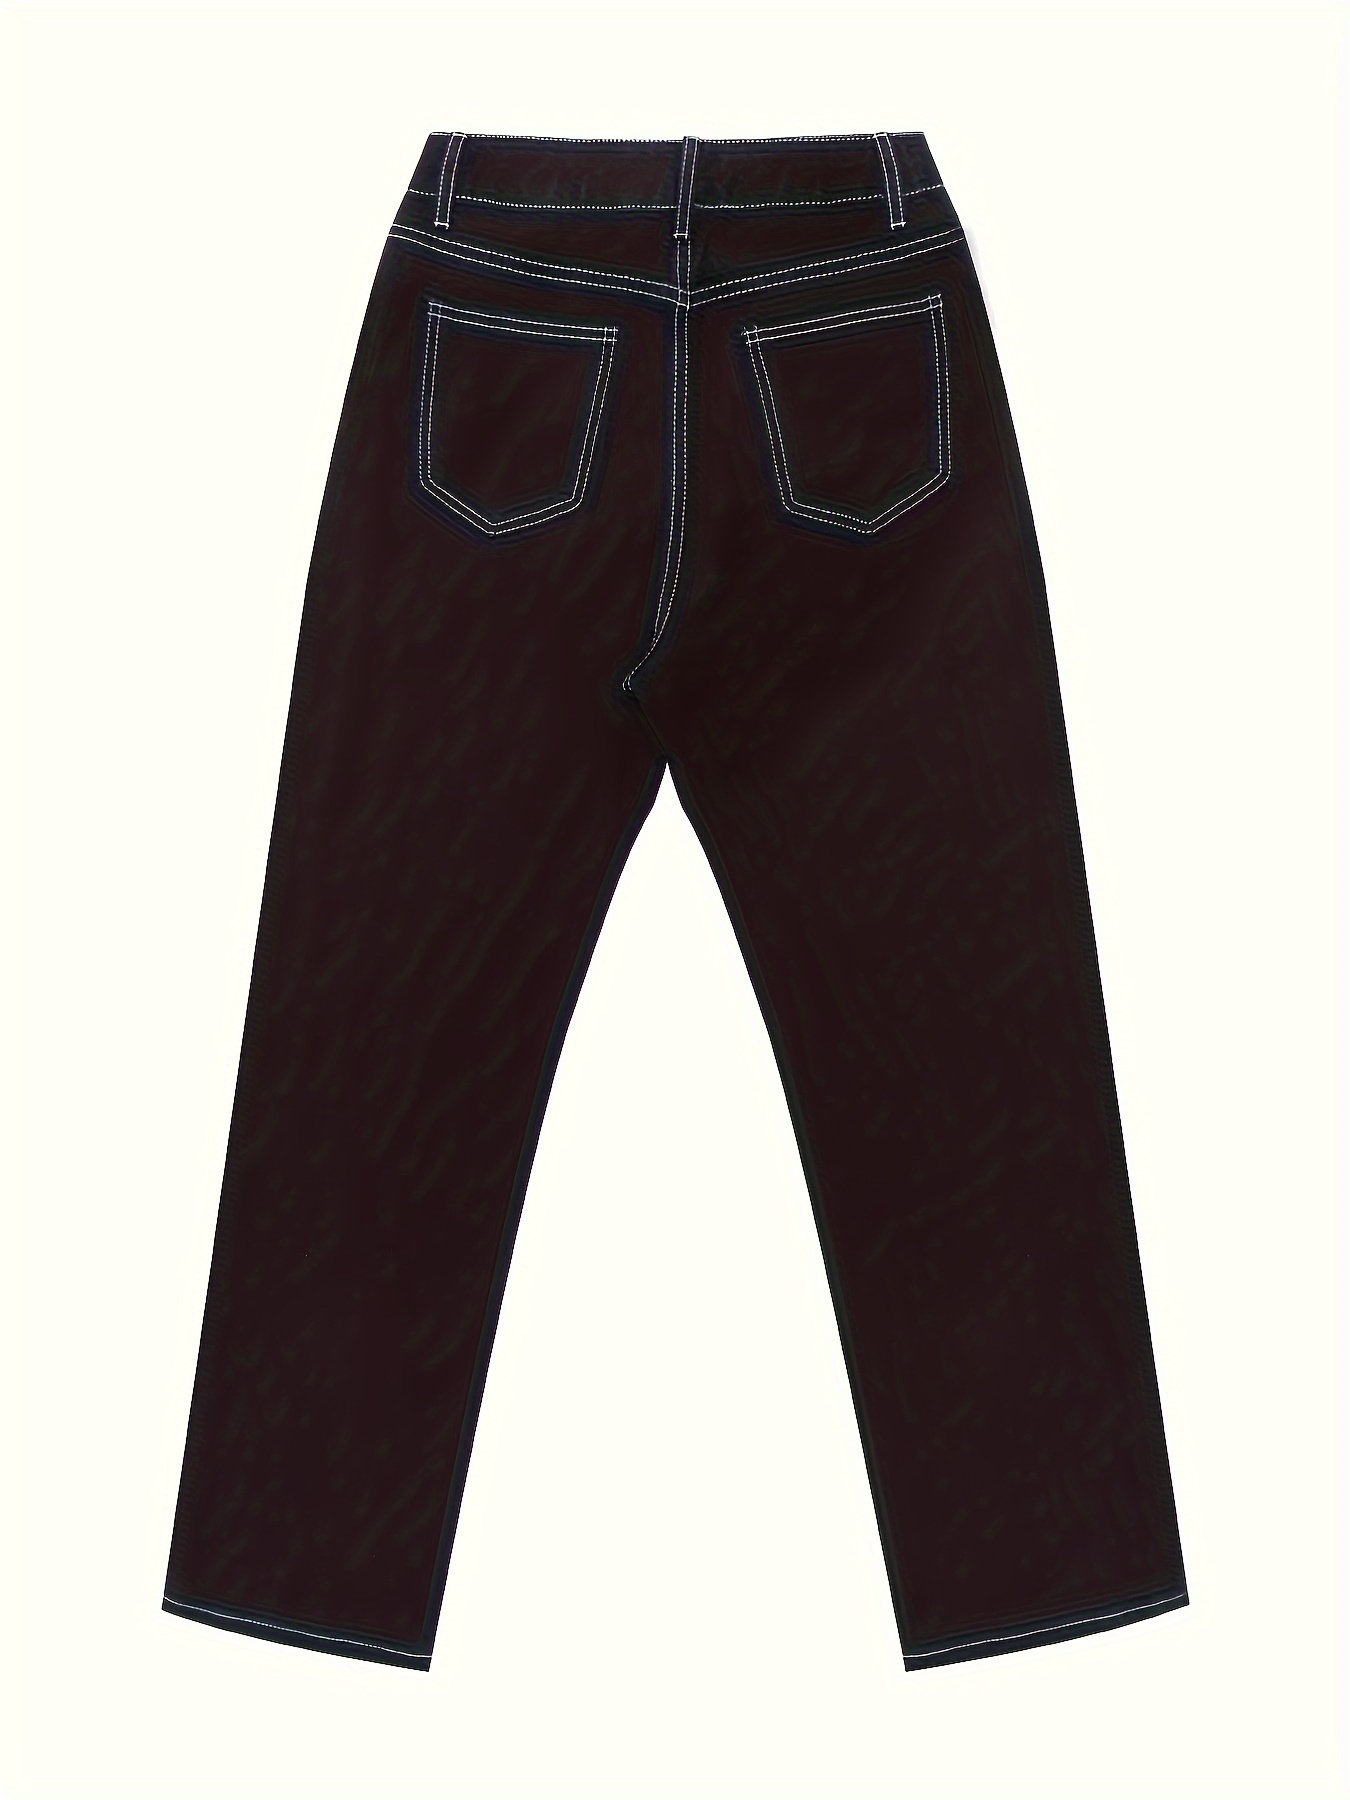 Indigo Denim Baggy Fit Long Pants Loose Fit Jeans Wide Leg Tapered Jeans 3D  Cut Denim Navy Cotton Jeans Baggy Pants -  Denmark